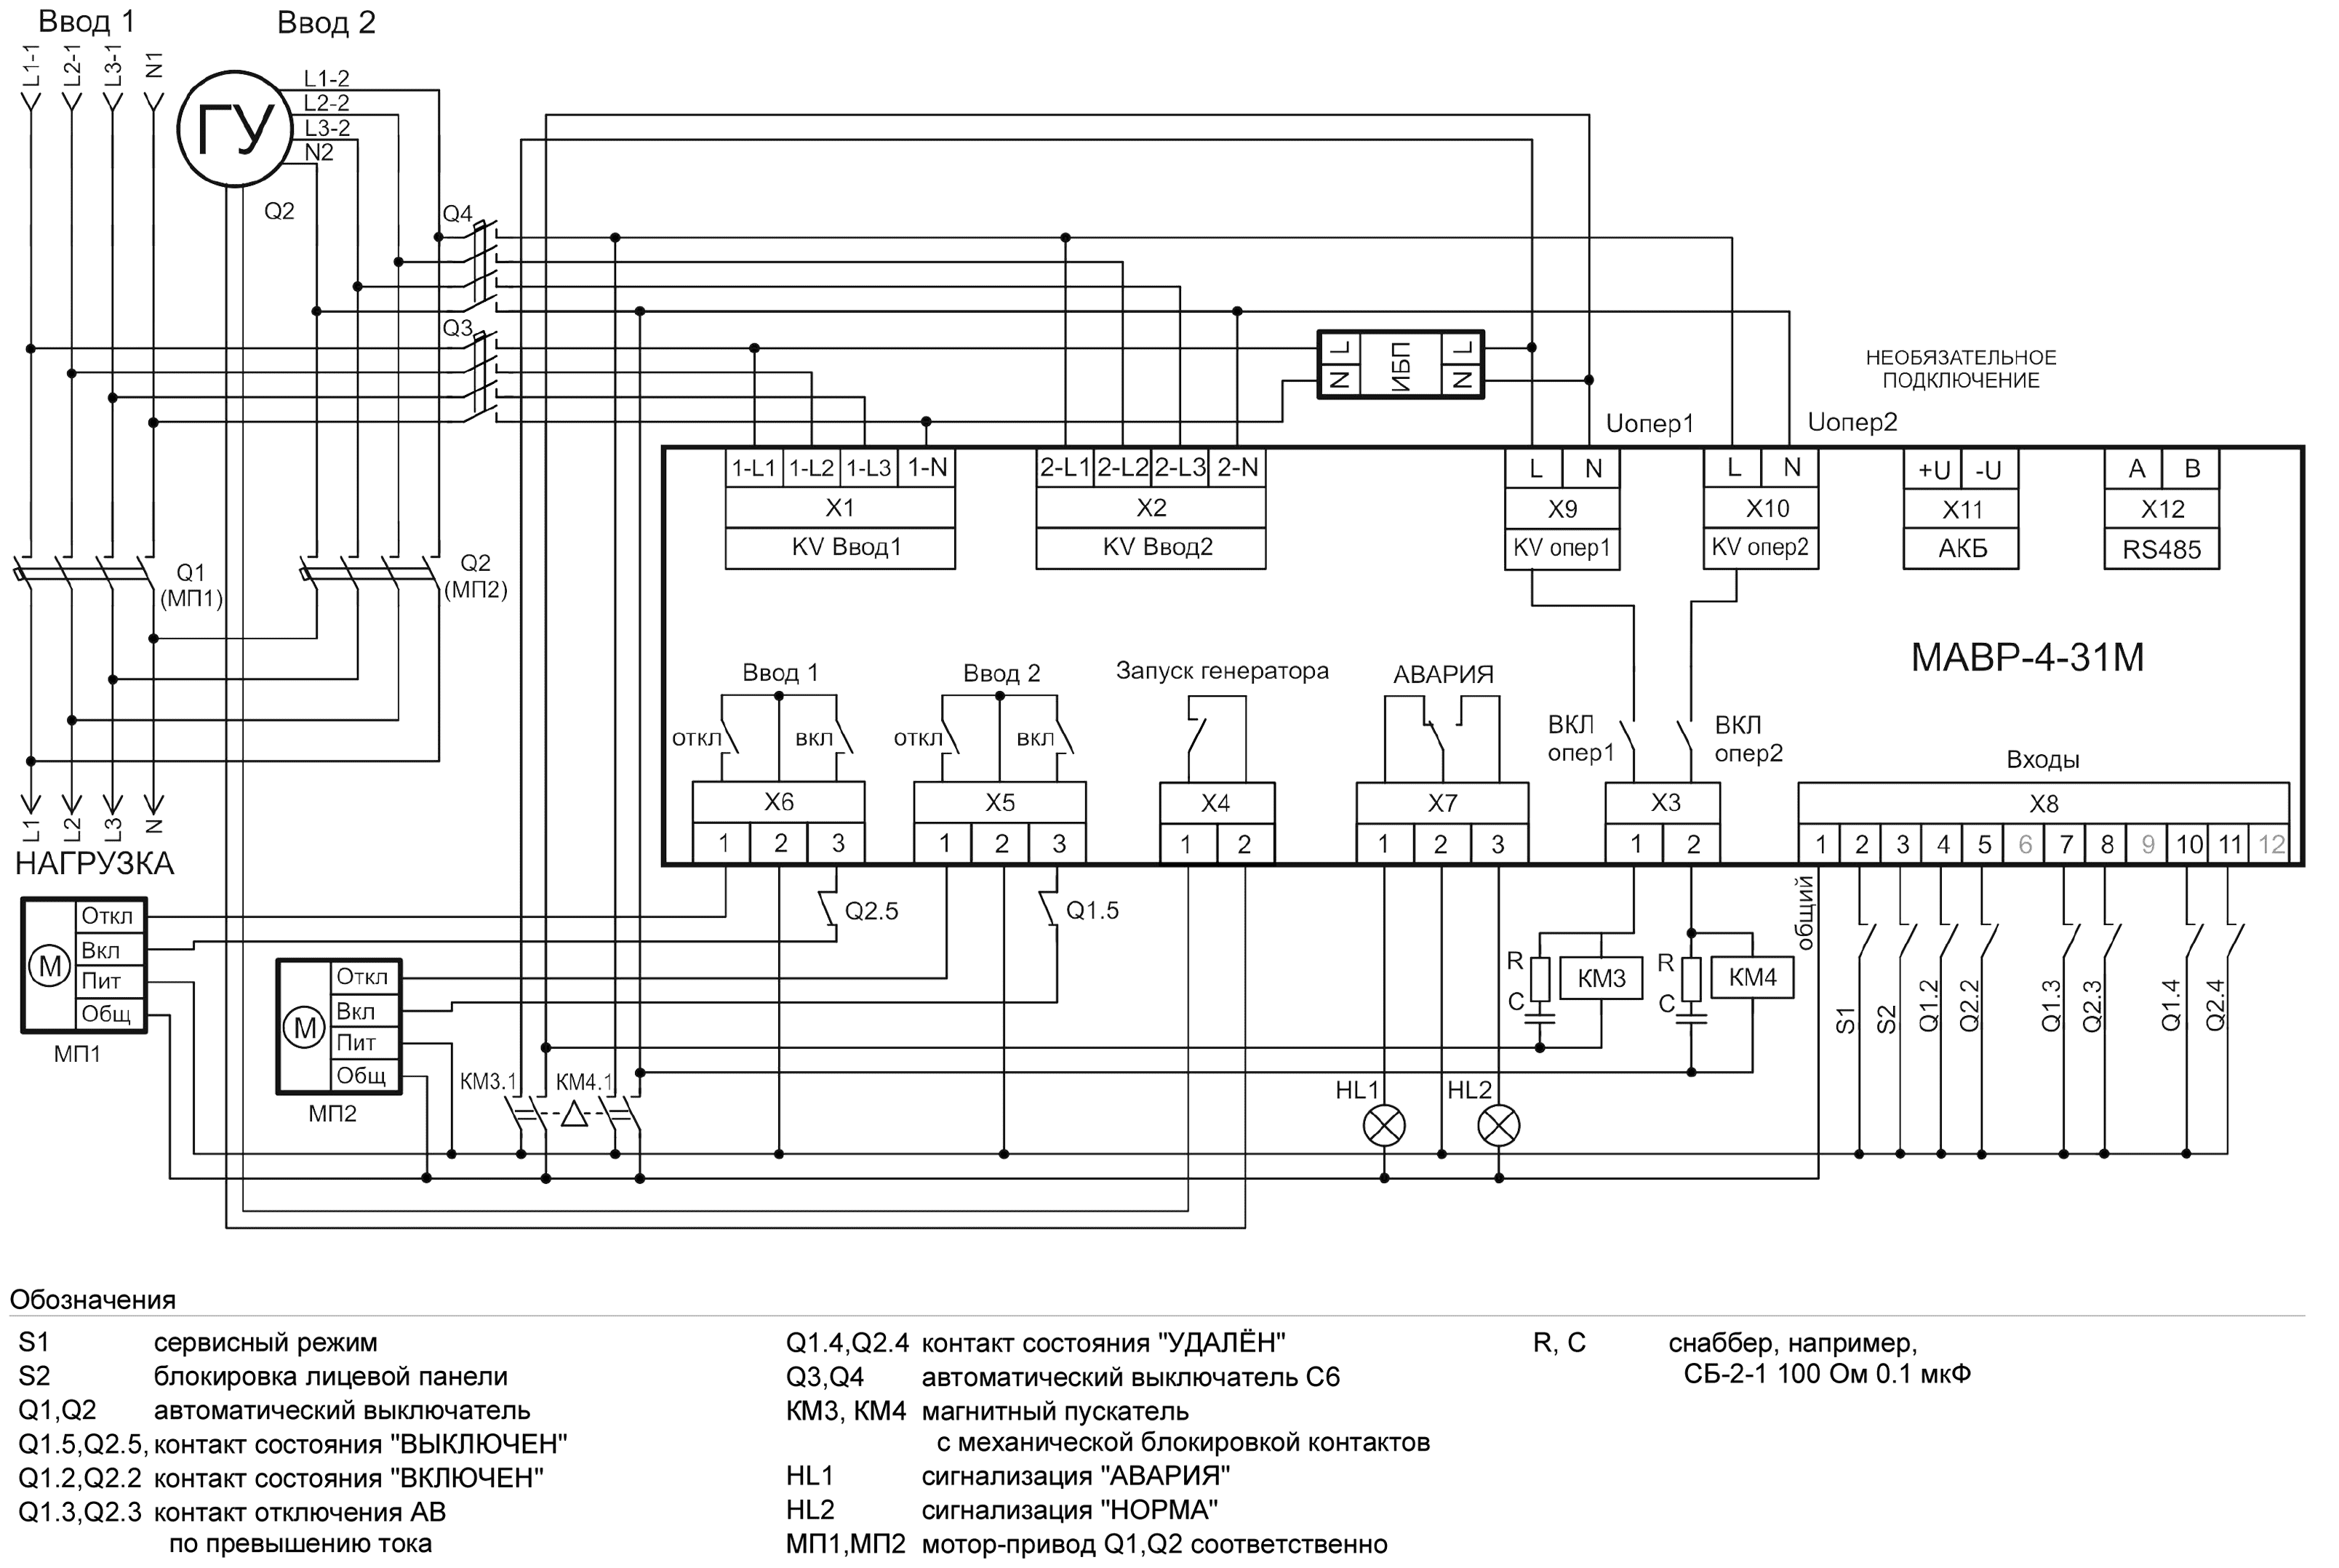 Схема АВР на автоматических выключателях с мотор-приводом 3-х фазный ввод и 3-фазный генератор с ИБП для питания АВР